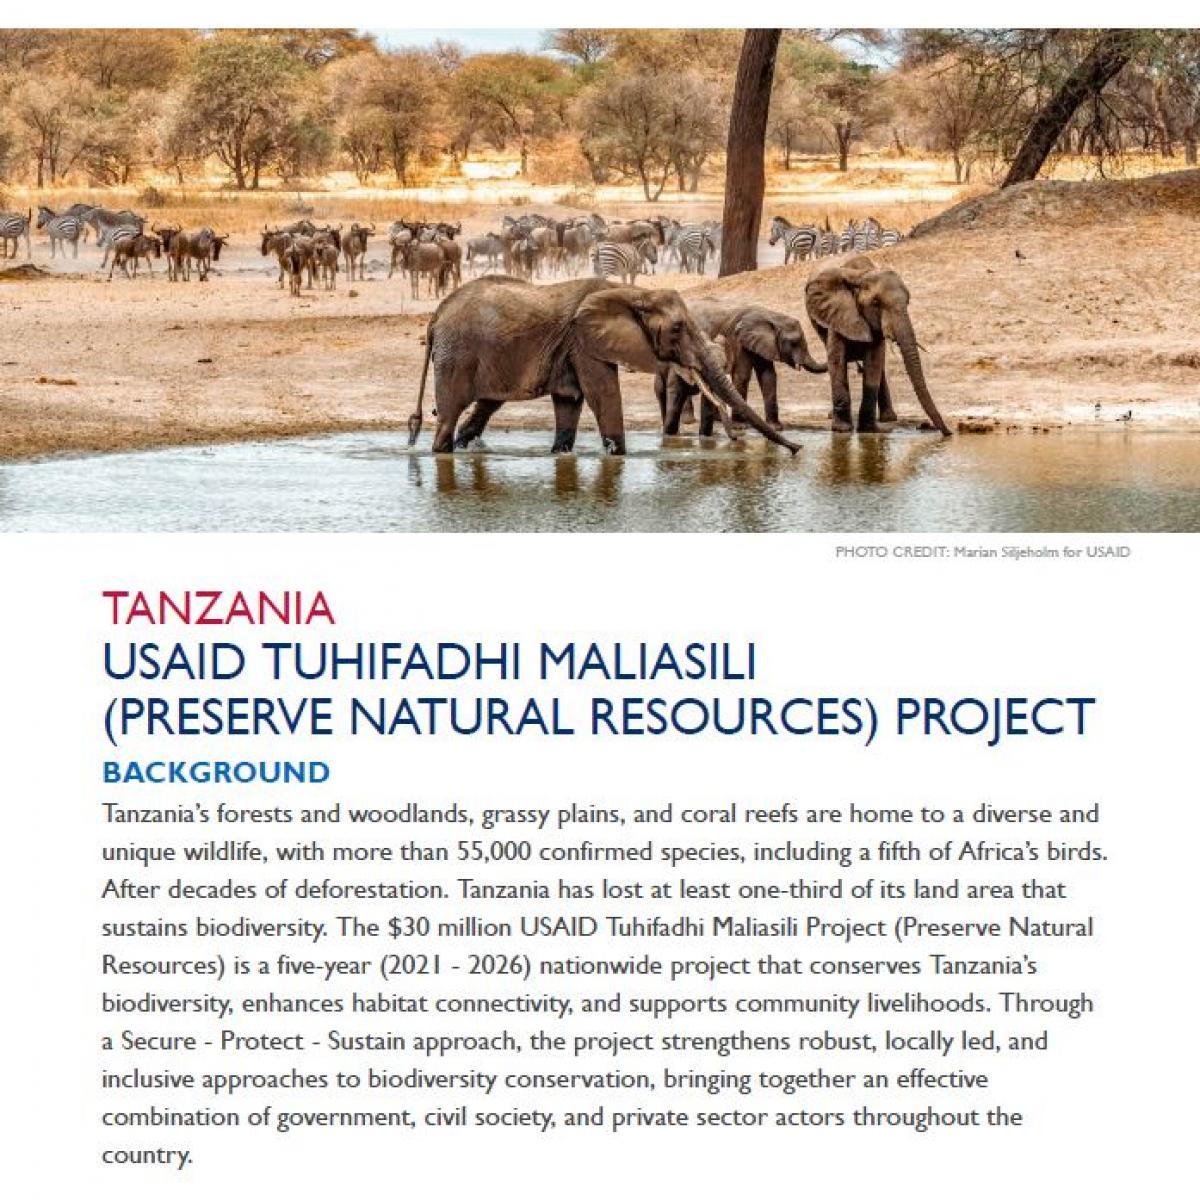 USAID Tuhifadhi Maliasili (Preserve Natural Resources) Factsheet